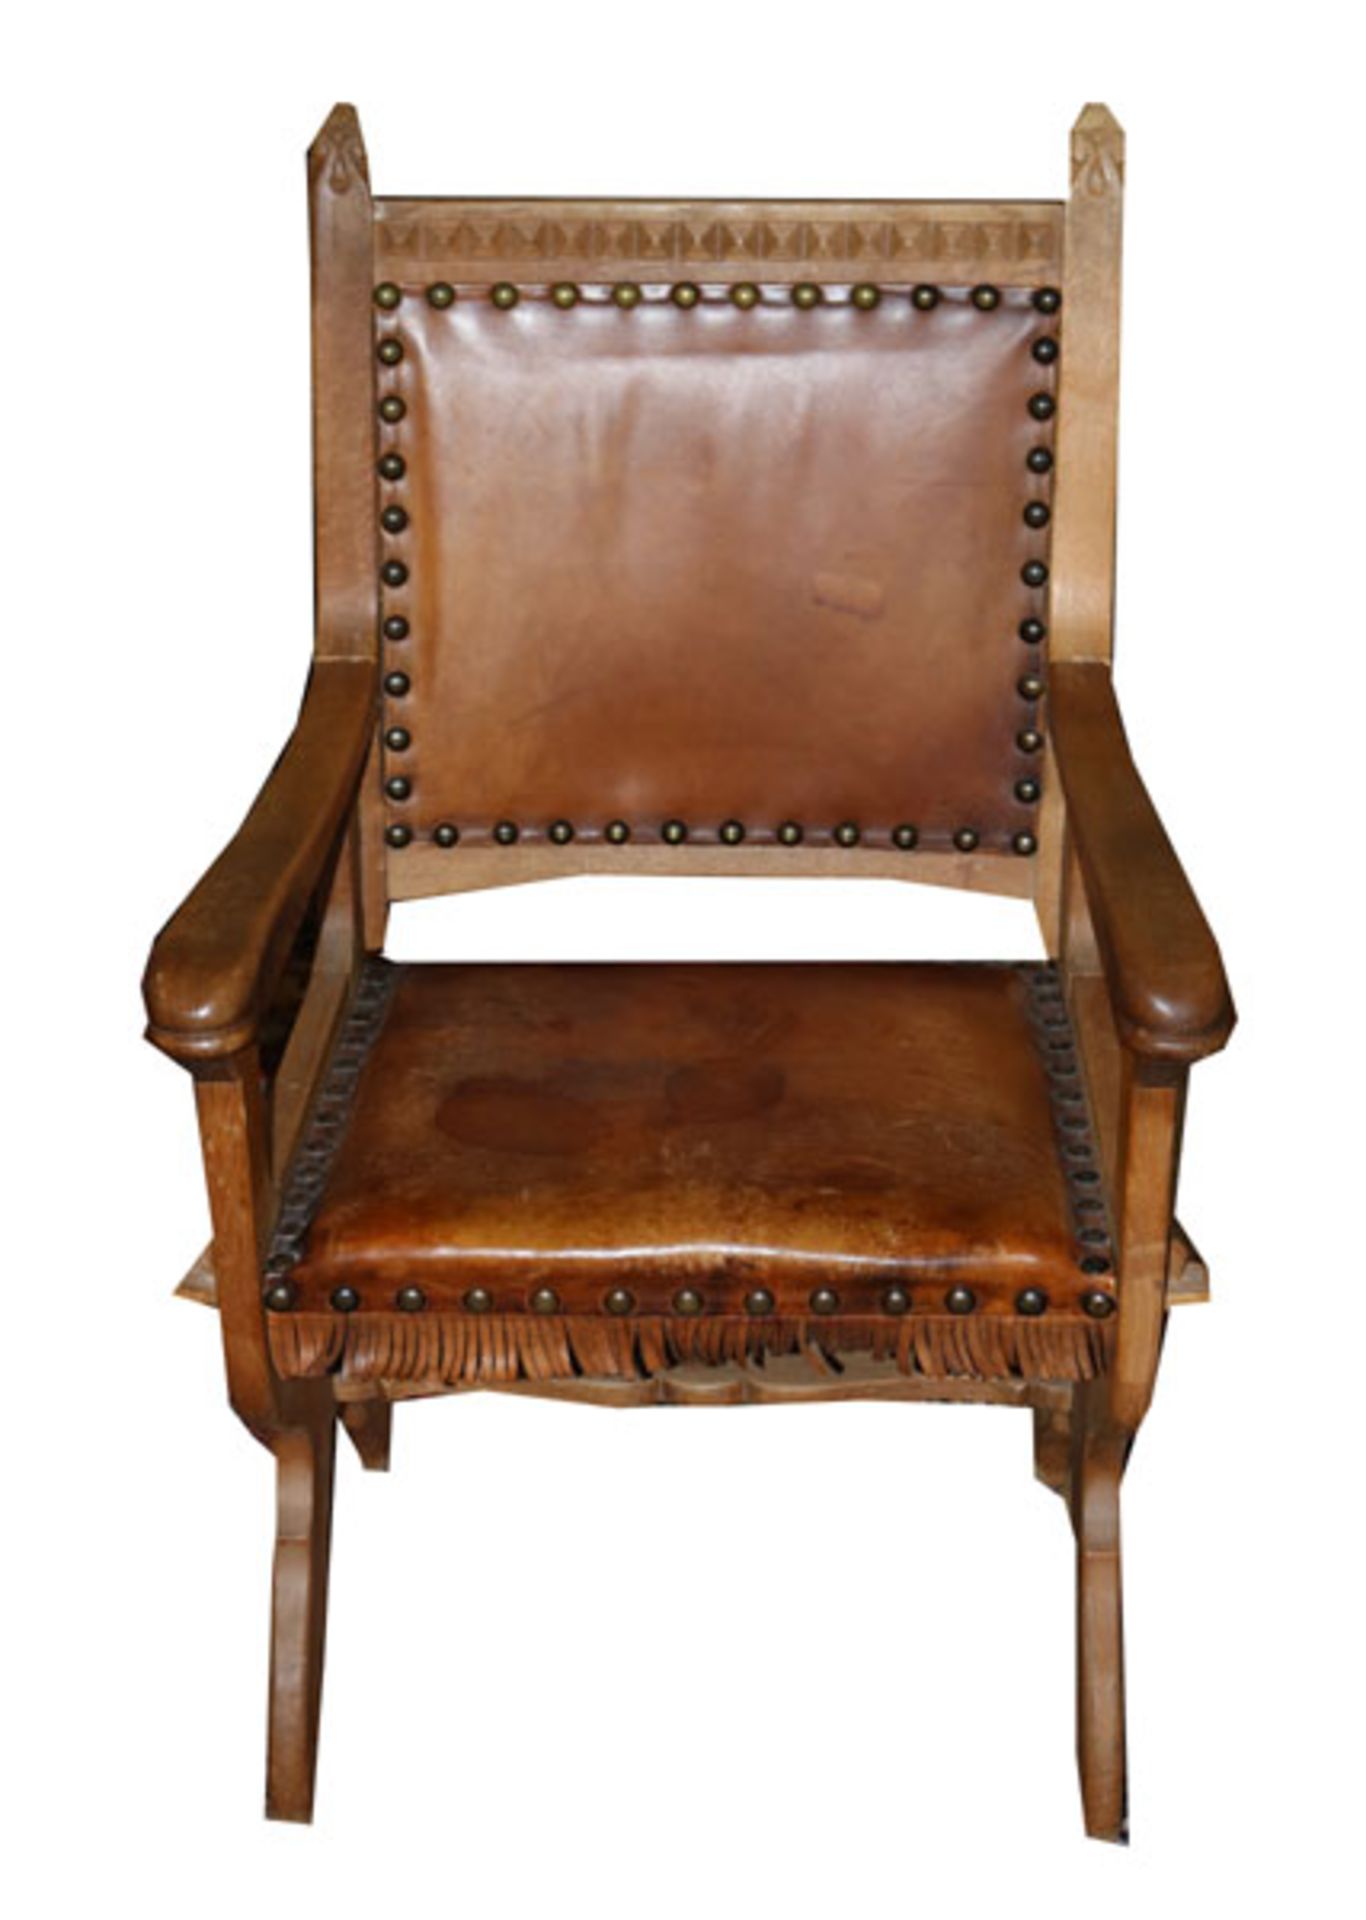 Rustikaler Eichen Armlehnstuhl, Sitz und Lehne mit Leder bezogen, fleckig, H 104 cm, B 62 cm, T 47